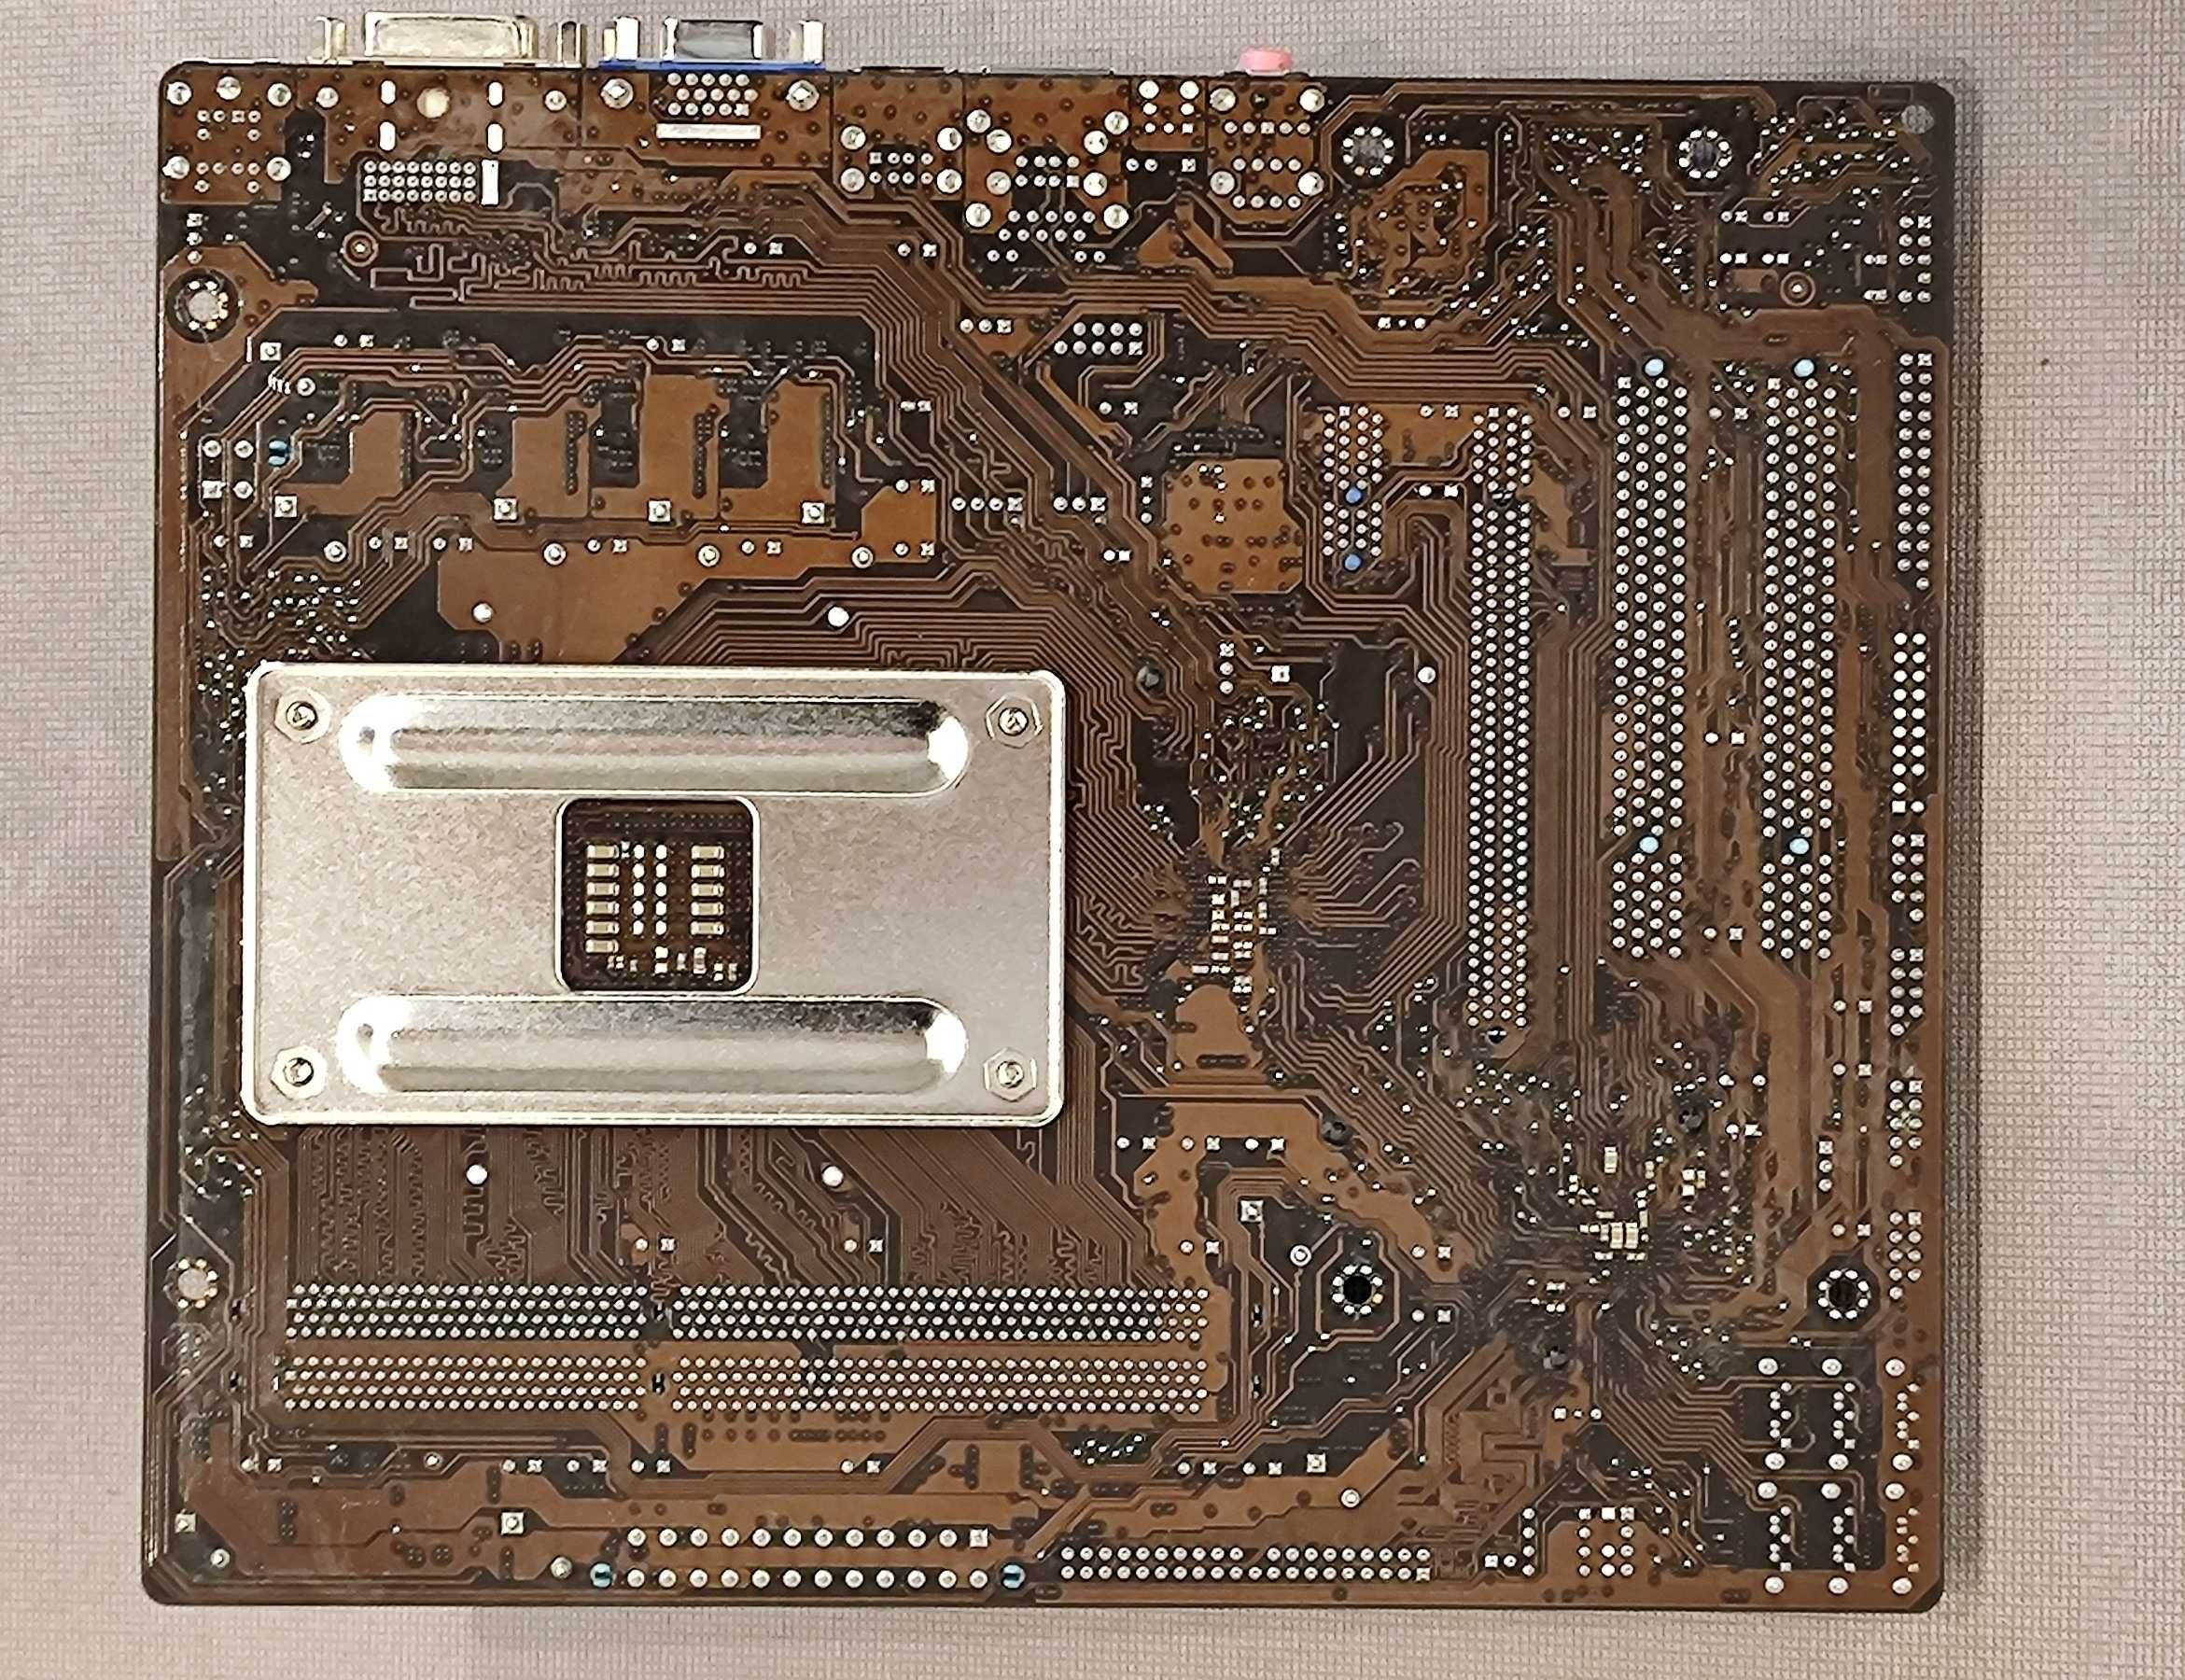 Материнская плата ASUS M4A78LT-M LE + AMD Phenom II X4 B45 + 2GB RAM